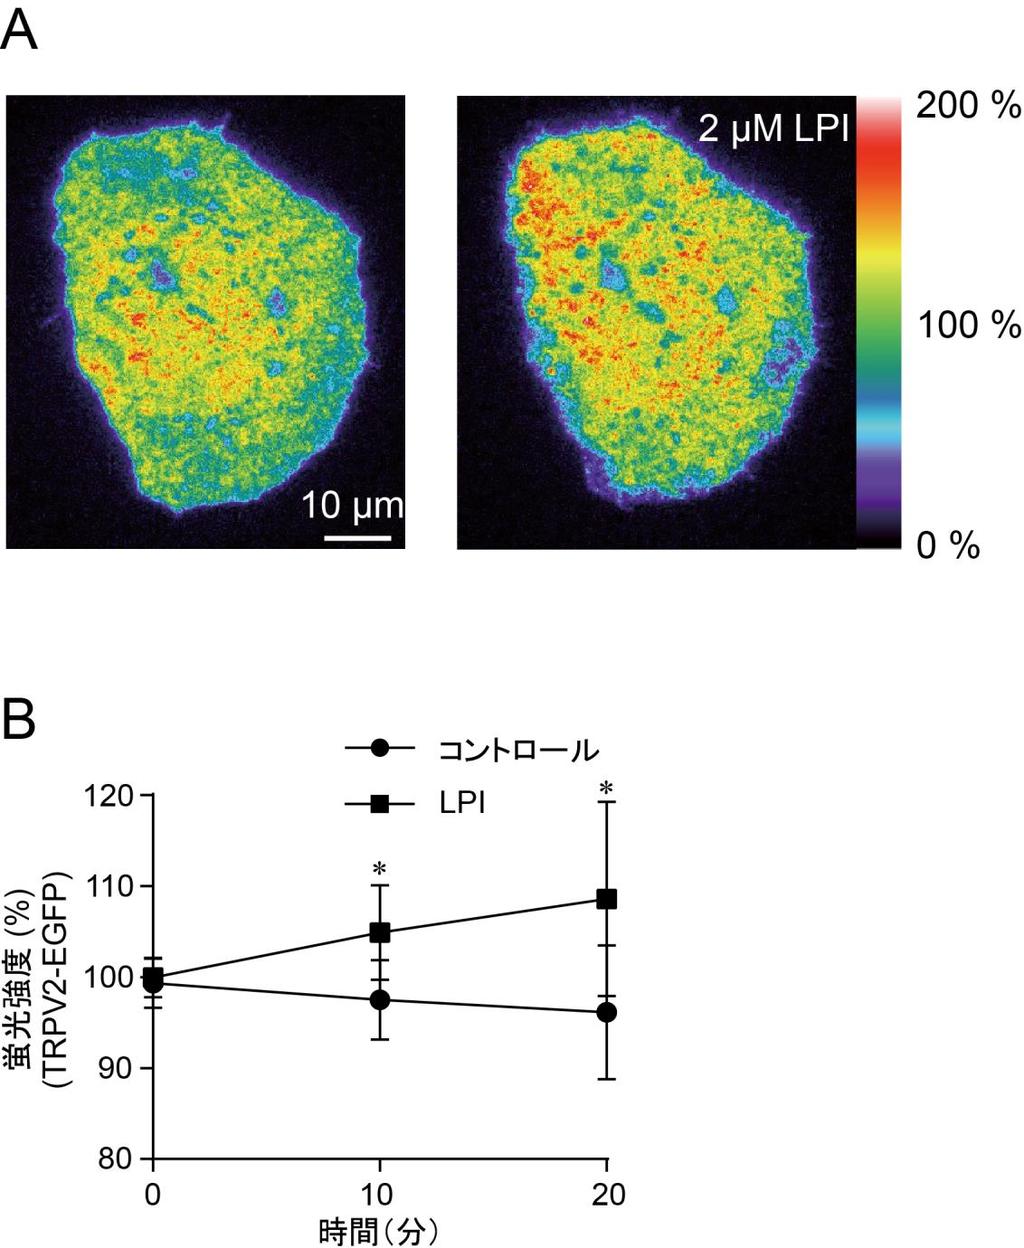 図 4.LPI 投与時の細胞膜上の TRPV2 動態の観察 (A) 蛍光タンパク質 GFP 融合型の TRPV2 を導入した GLUTag 細胞に LPI を投与した際の 全反射蛍光顕微鏡による疑似カラー画像 左 :0 分 右 :20 分 (B)LPI 投与時の GFP 融合型 TRPV2 の蛍光強度変化 データは平均 ±SD 細胞数 6 以上 * は P < 0.